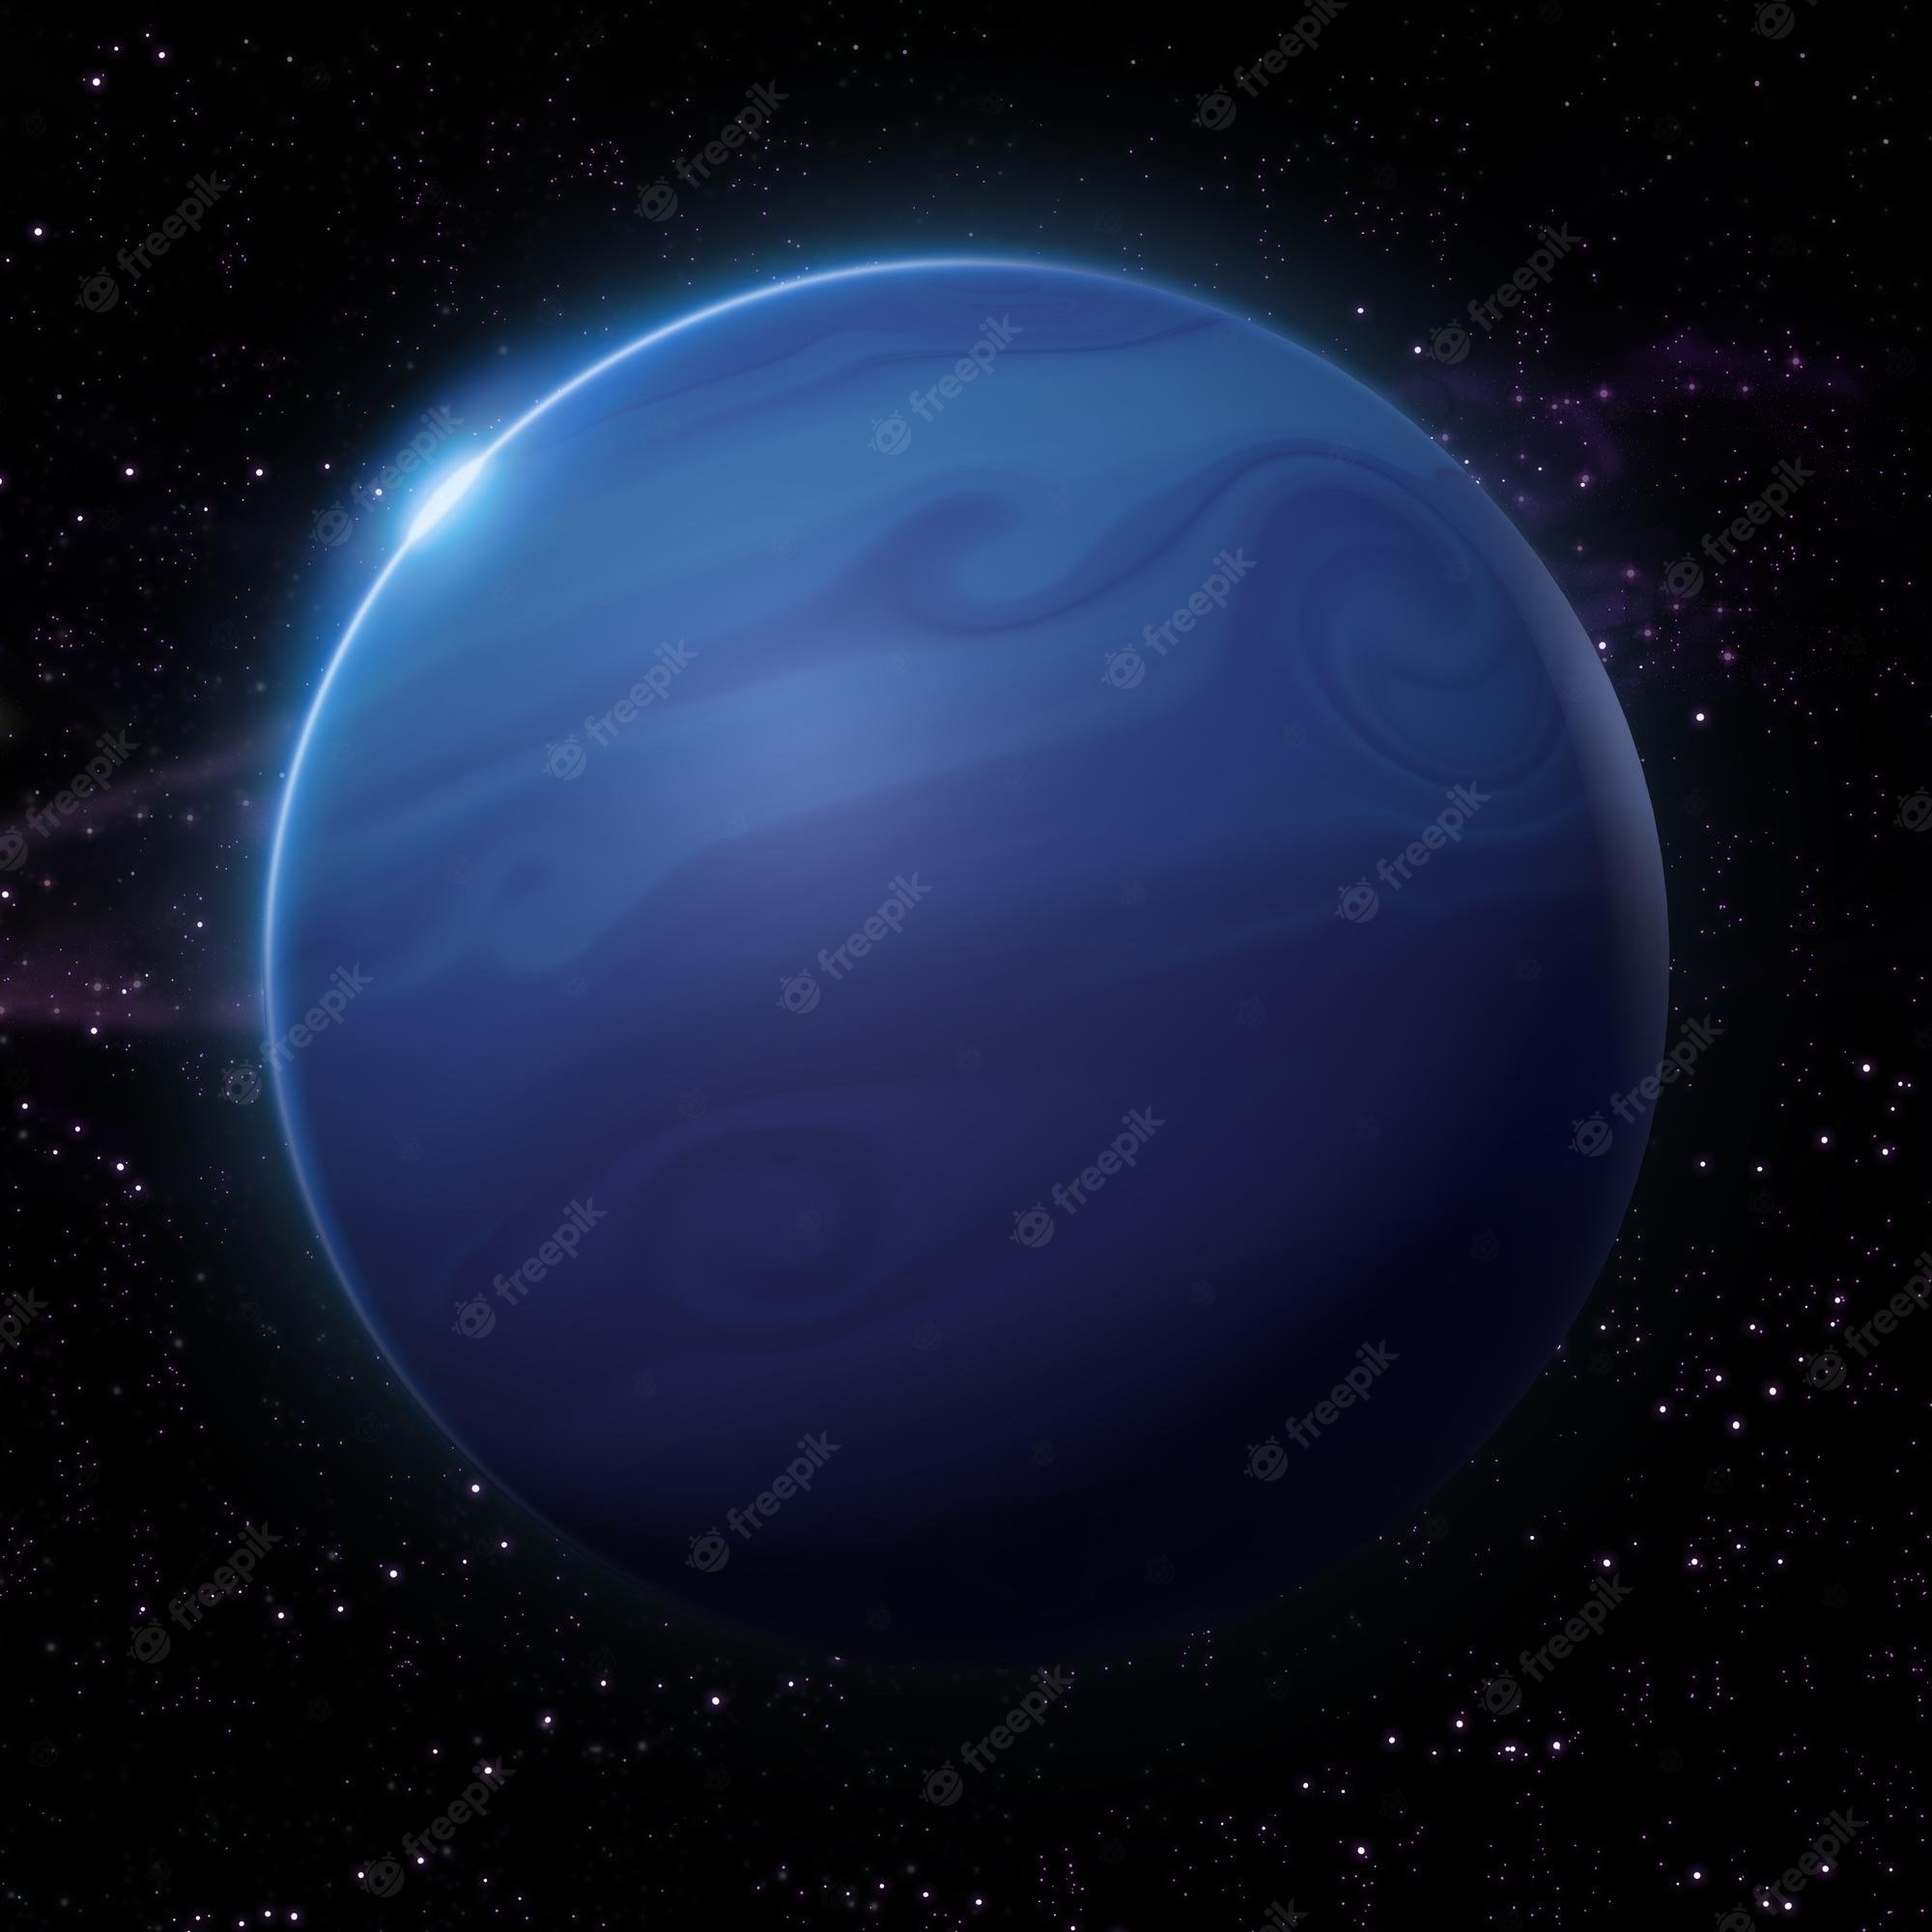 картинки планеты нептун